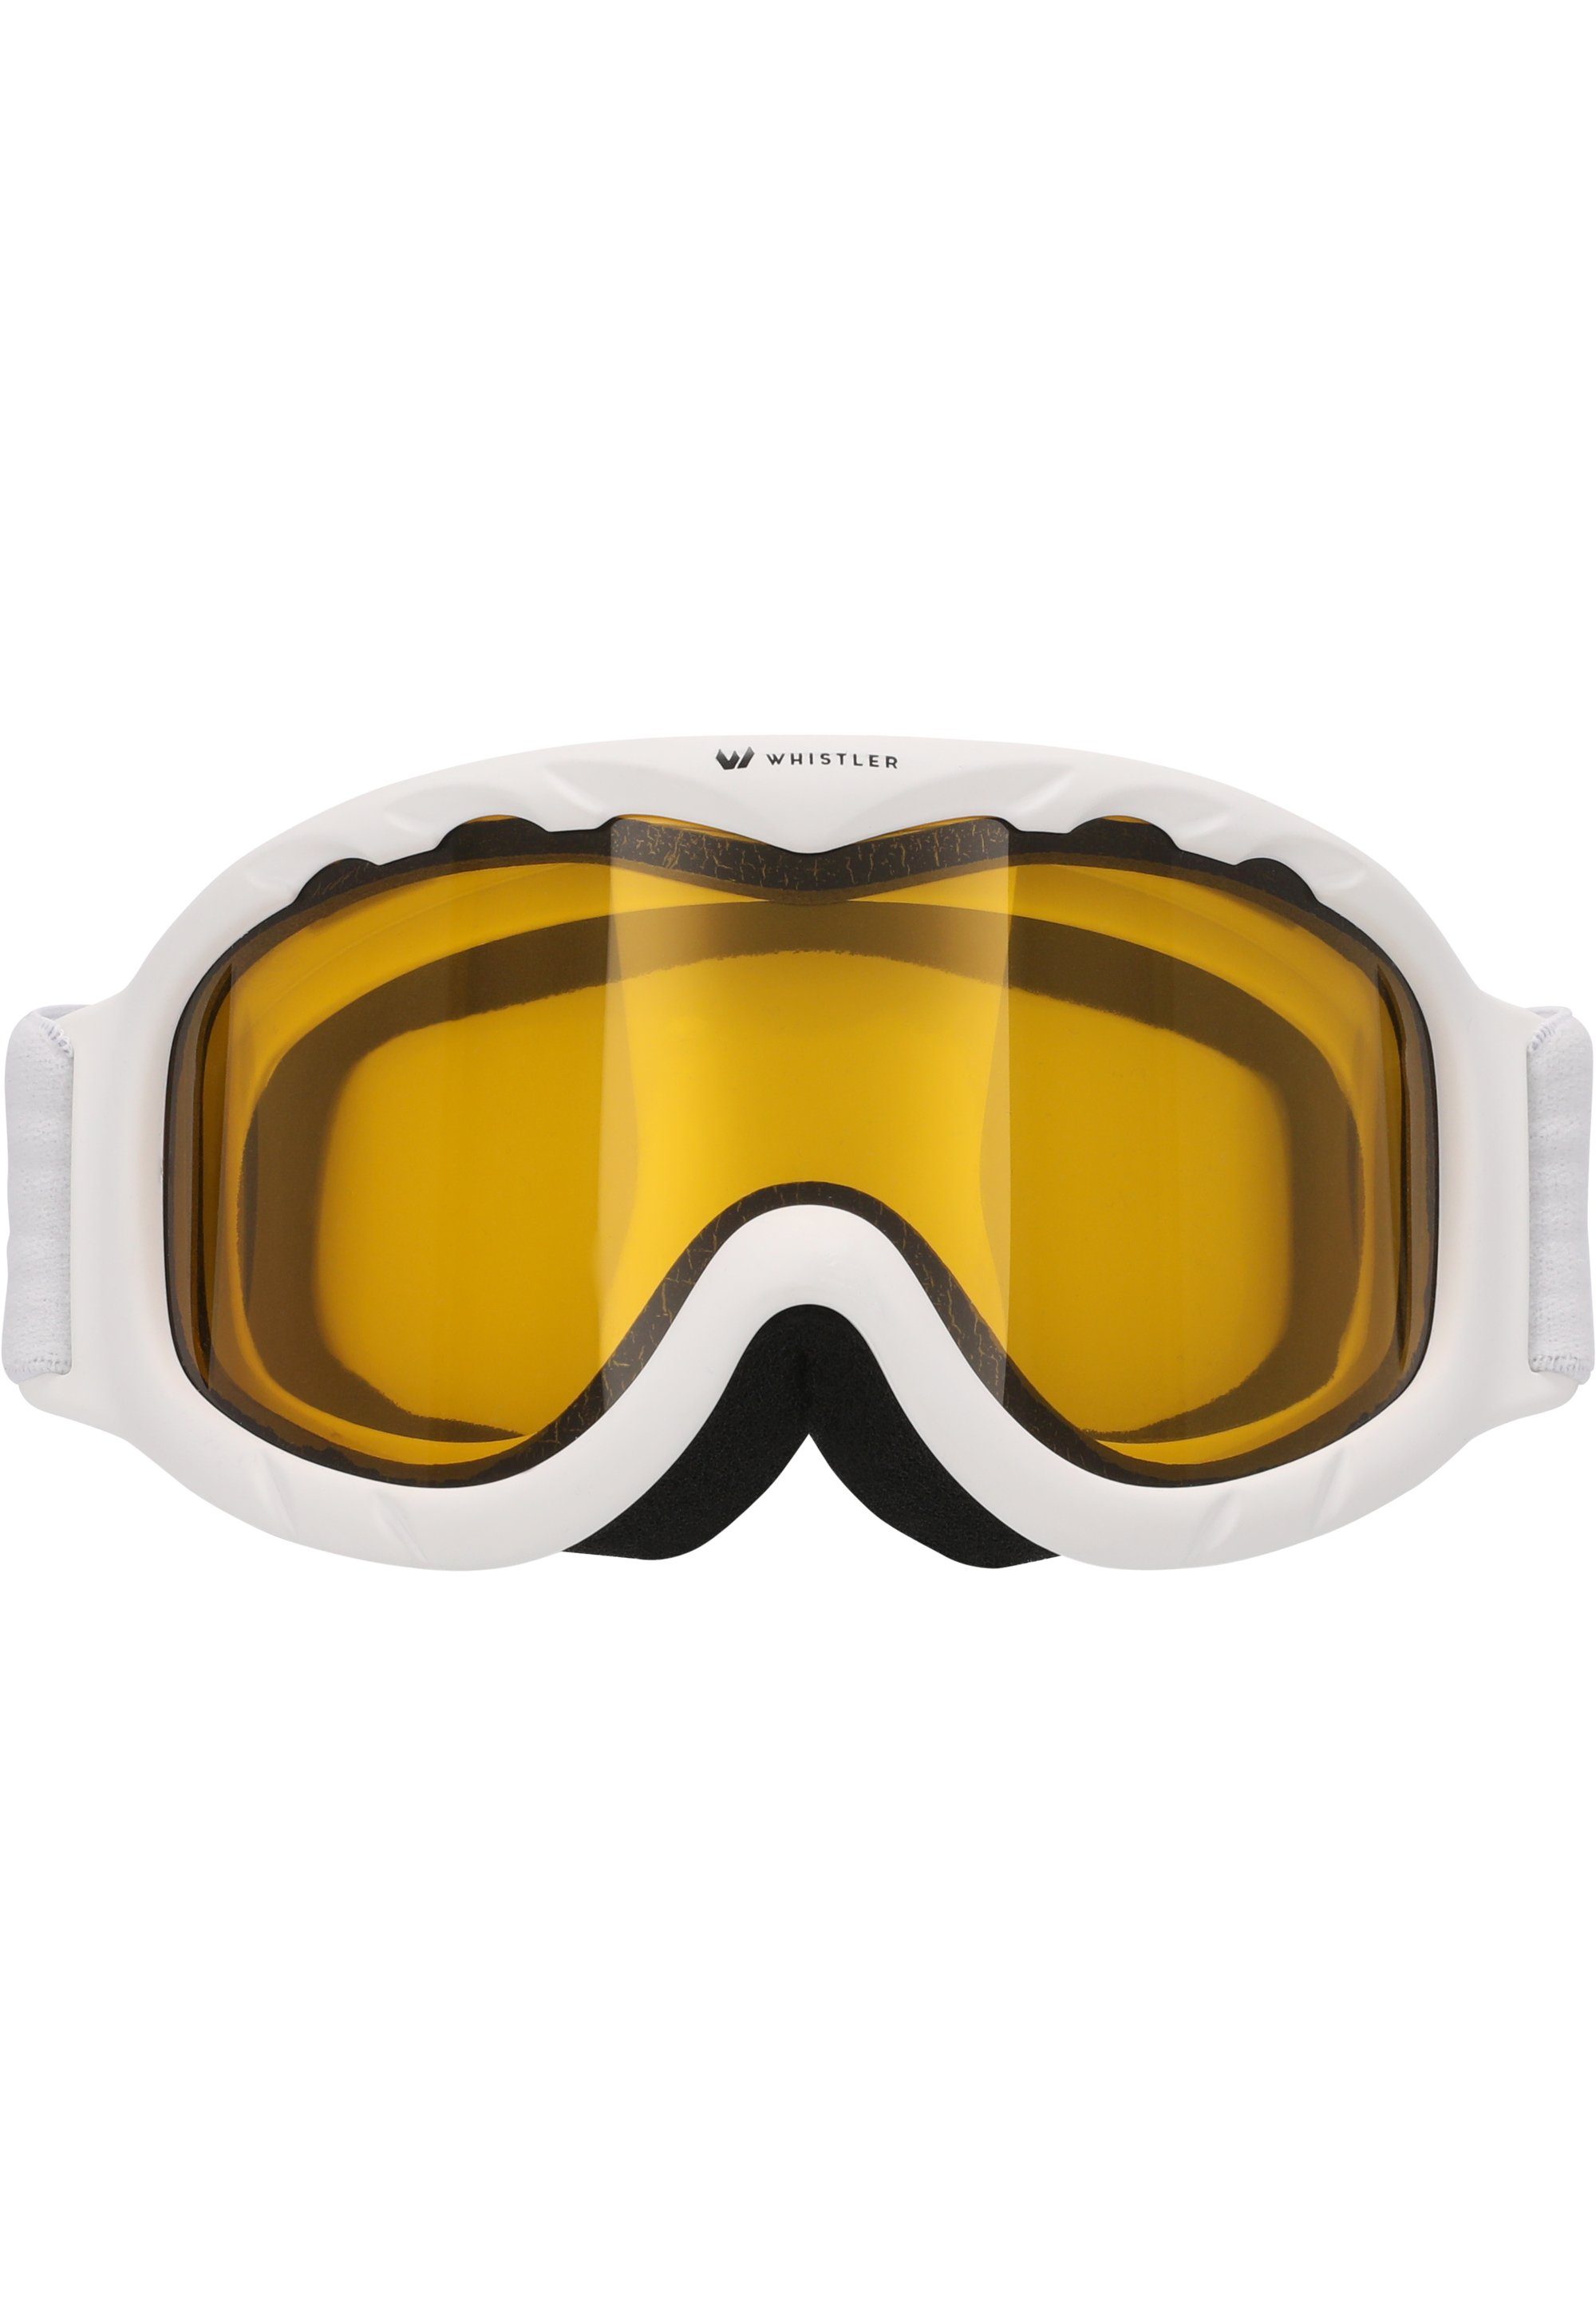 WHISTLER Skibrille WS300 Anti-Fog-Beschichtung Ski mit weiß Jr. Goggle